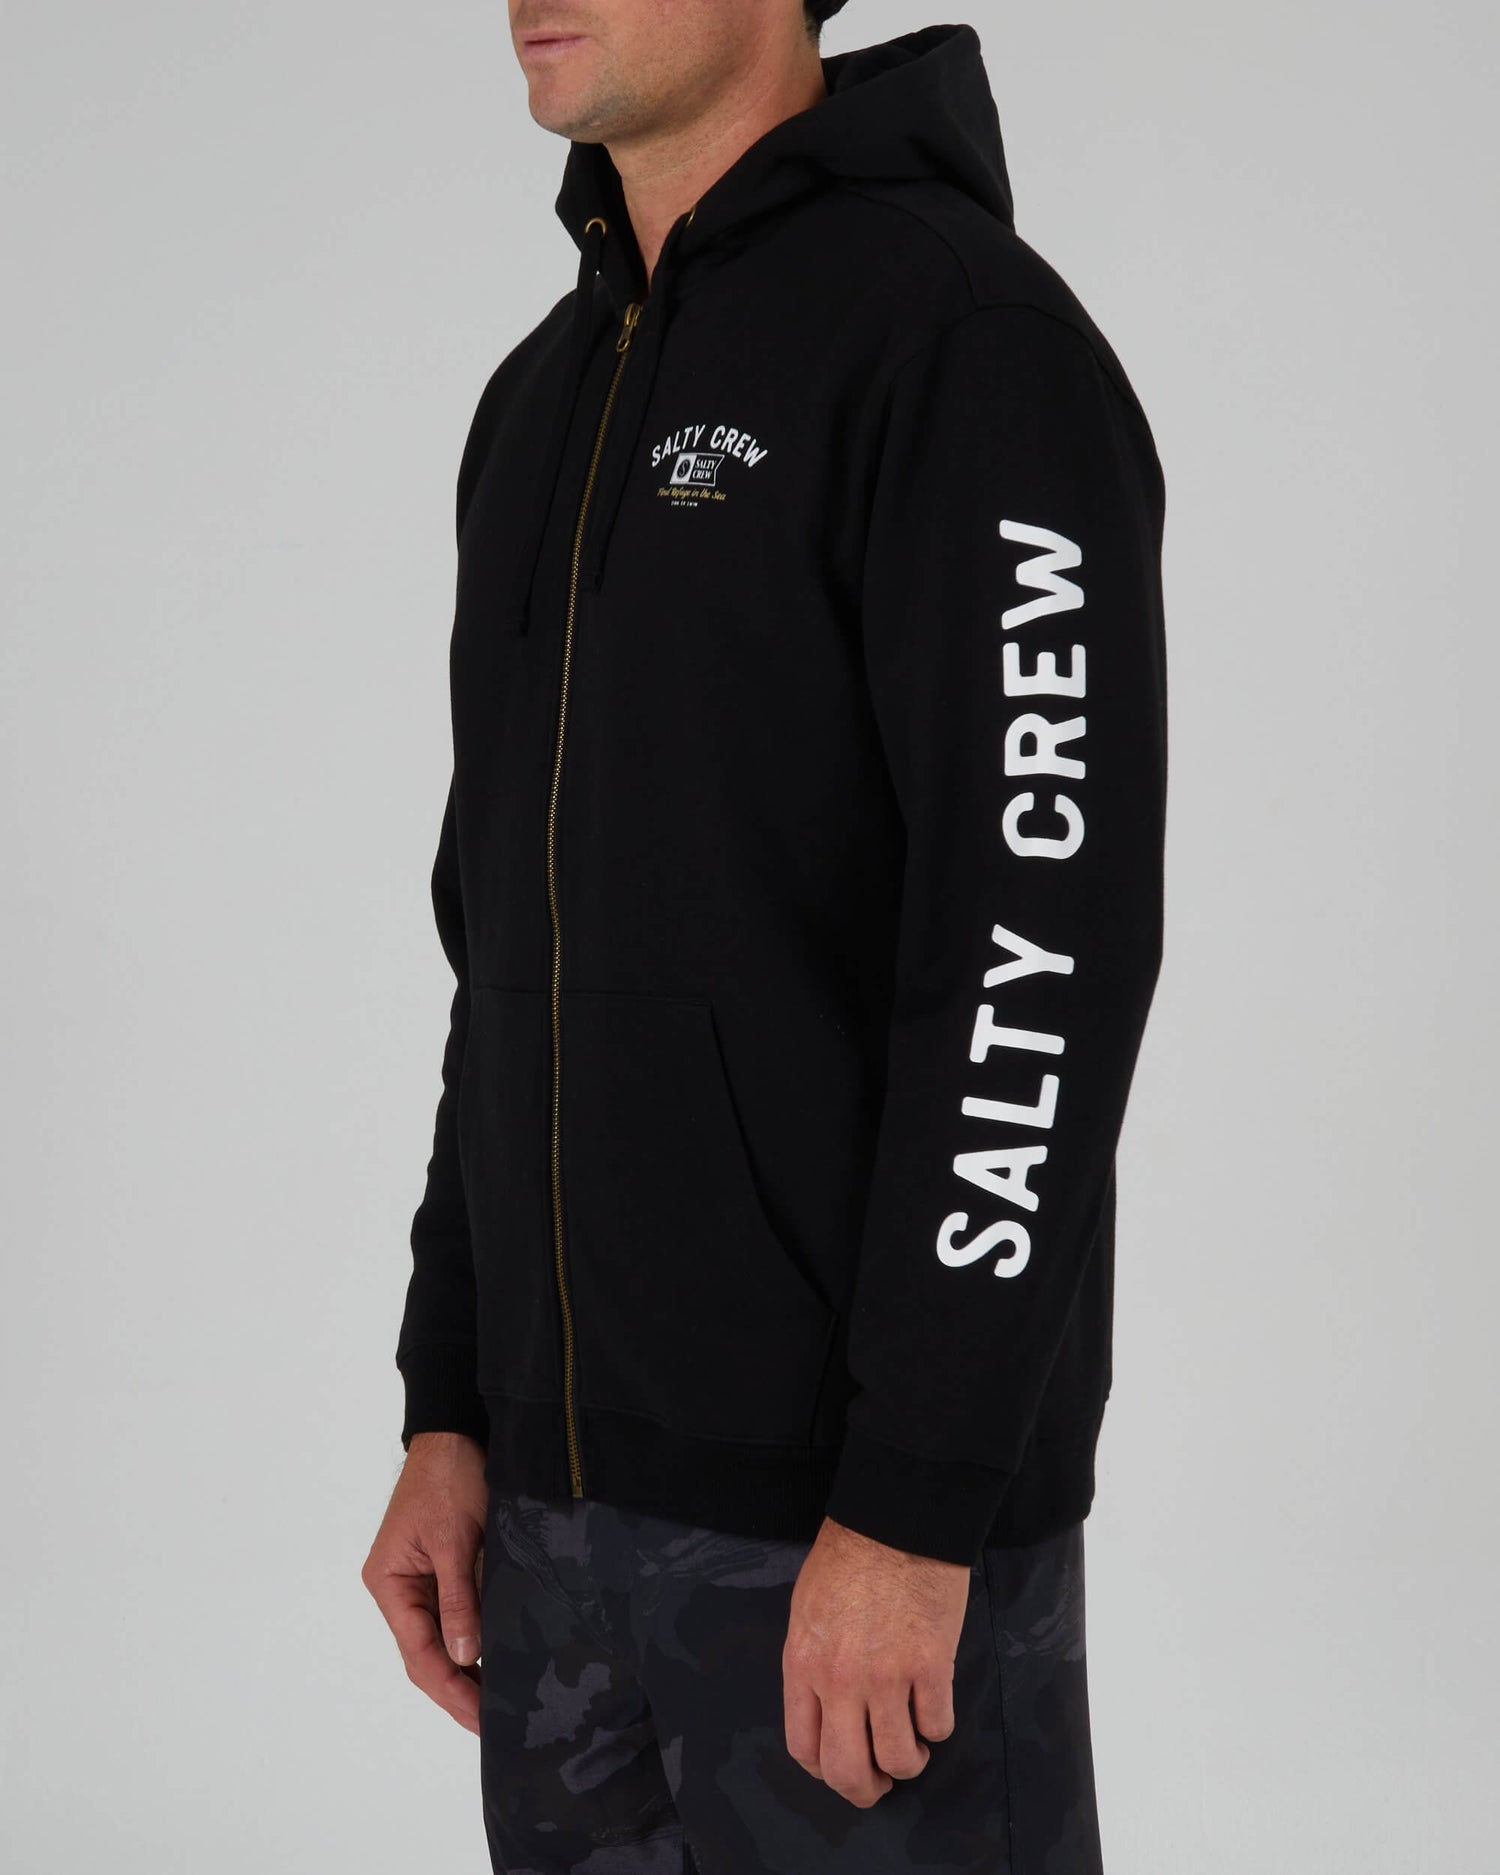 Salty Crew Men - Surf Club Zip Fleece - Black